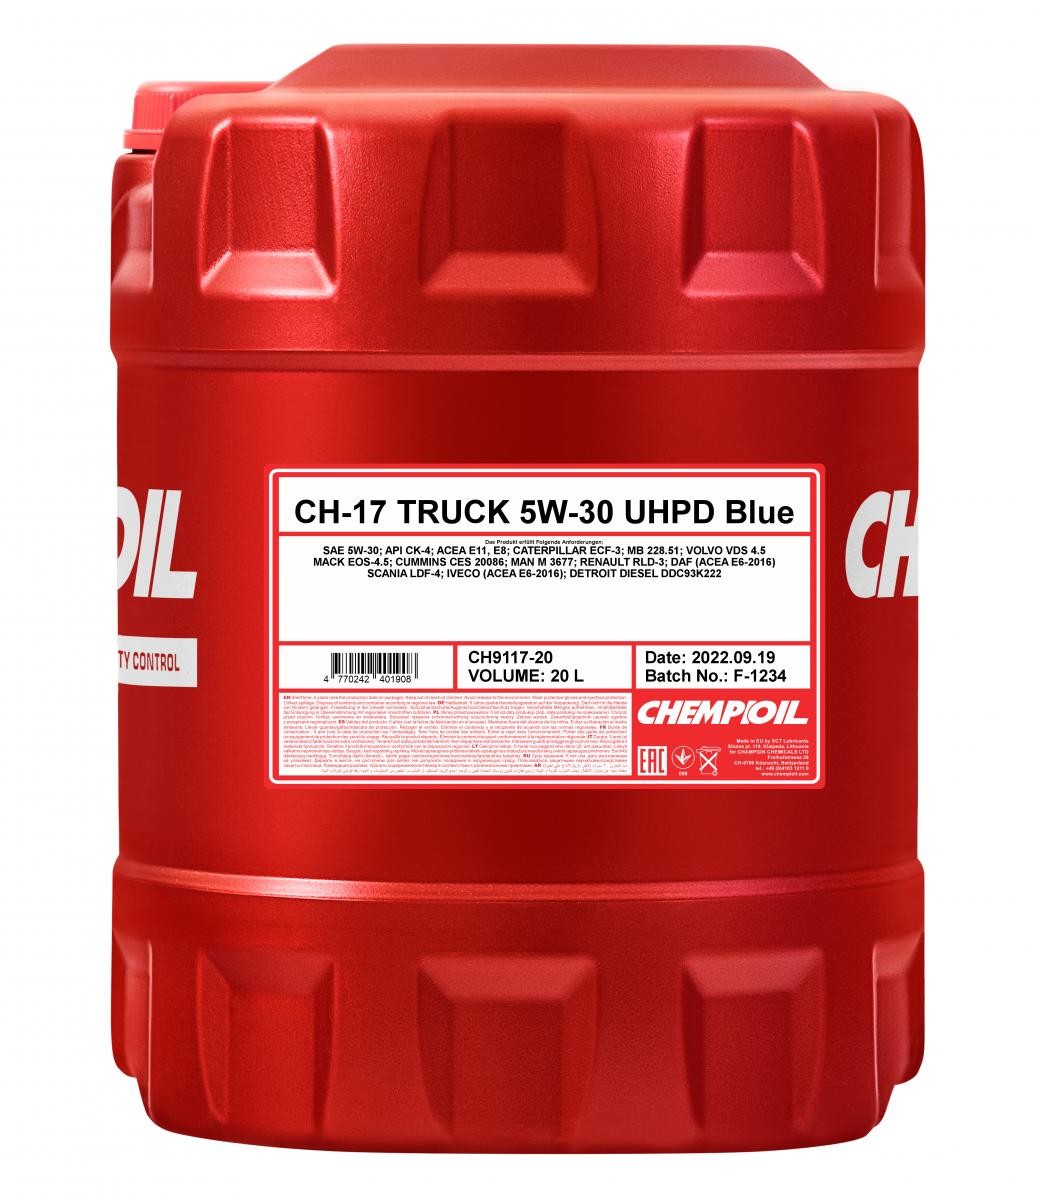 Kaufen Sie Motorenöl CHEMPIOIL CH9117-20 Truck, UHPD Blue CH-17 5W-30, 20l